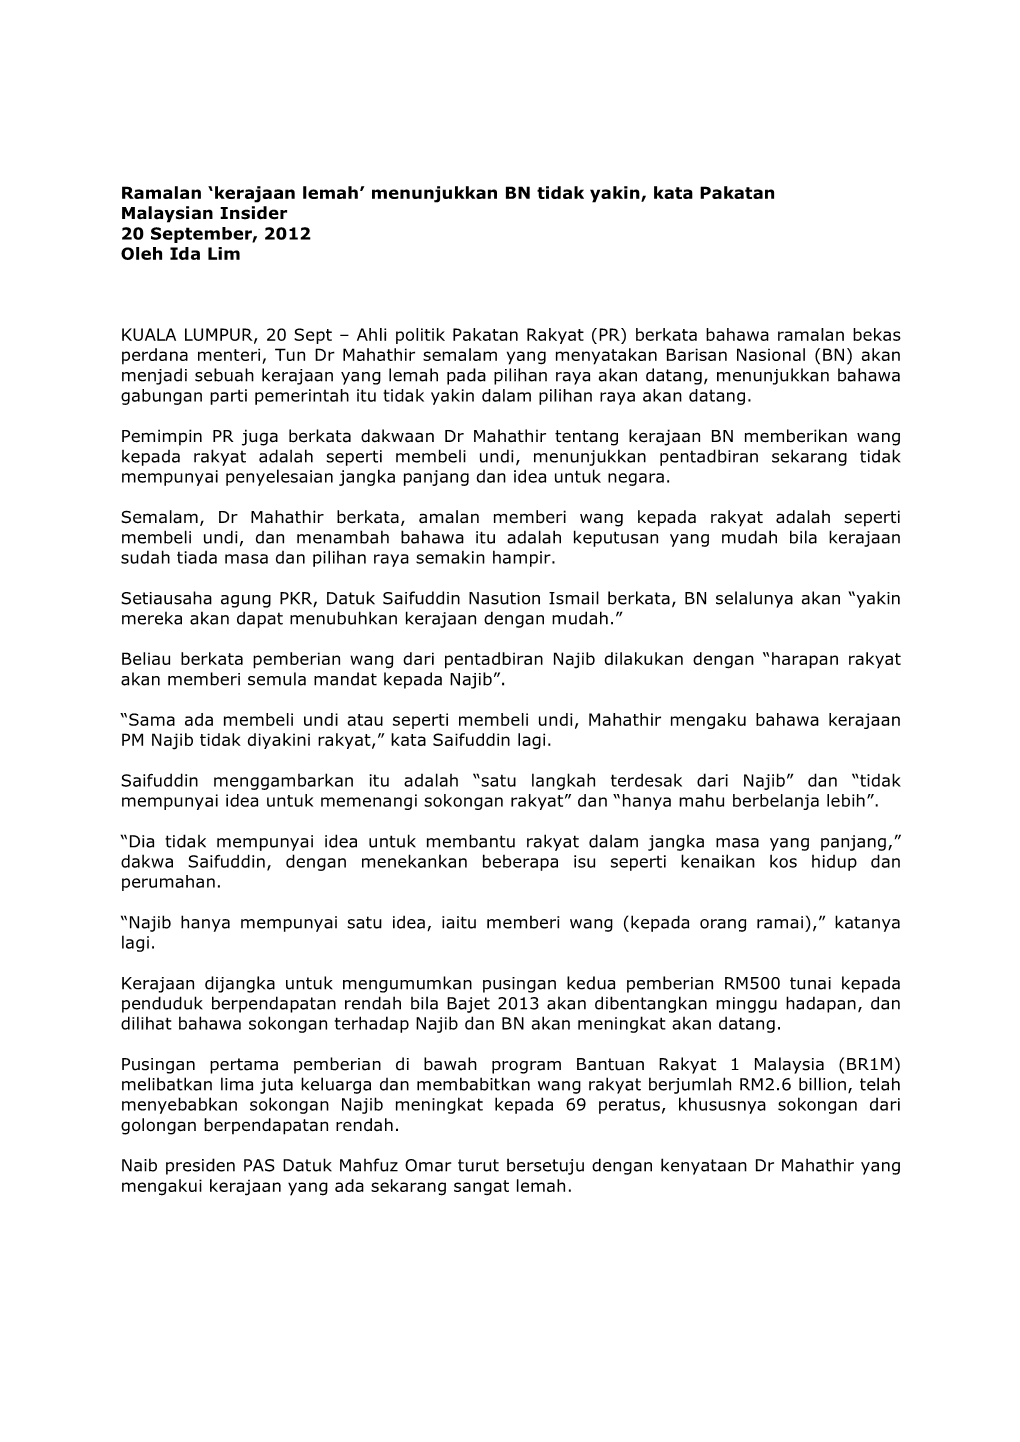 Ramalan 'Kerajaan Lemah' Menunjukkan BN Tidak Yakin, Kata